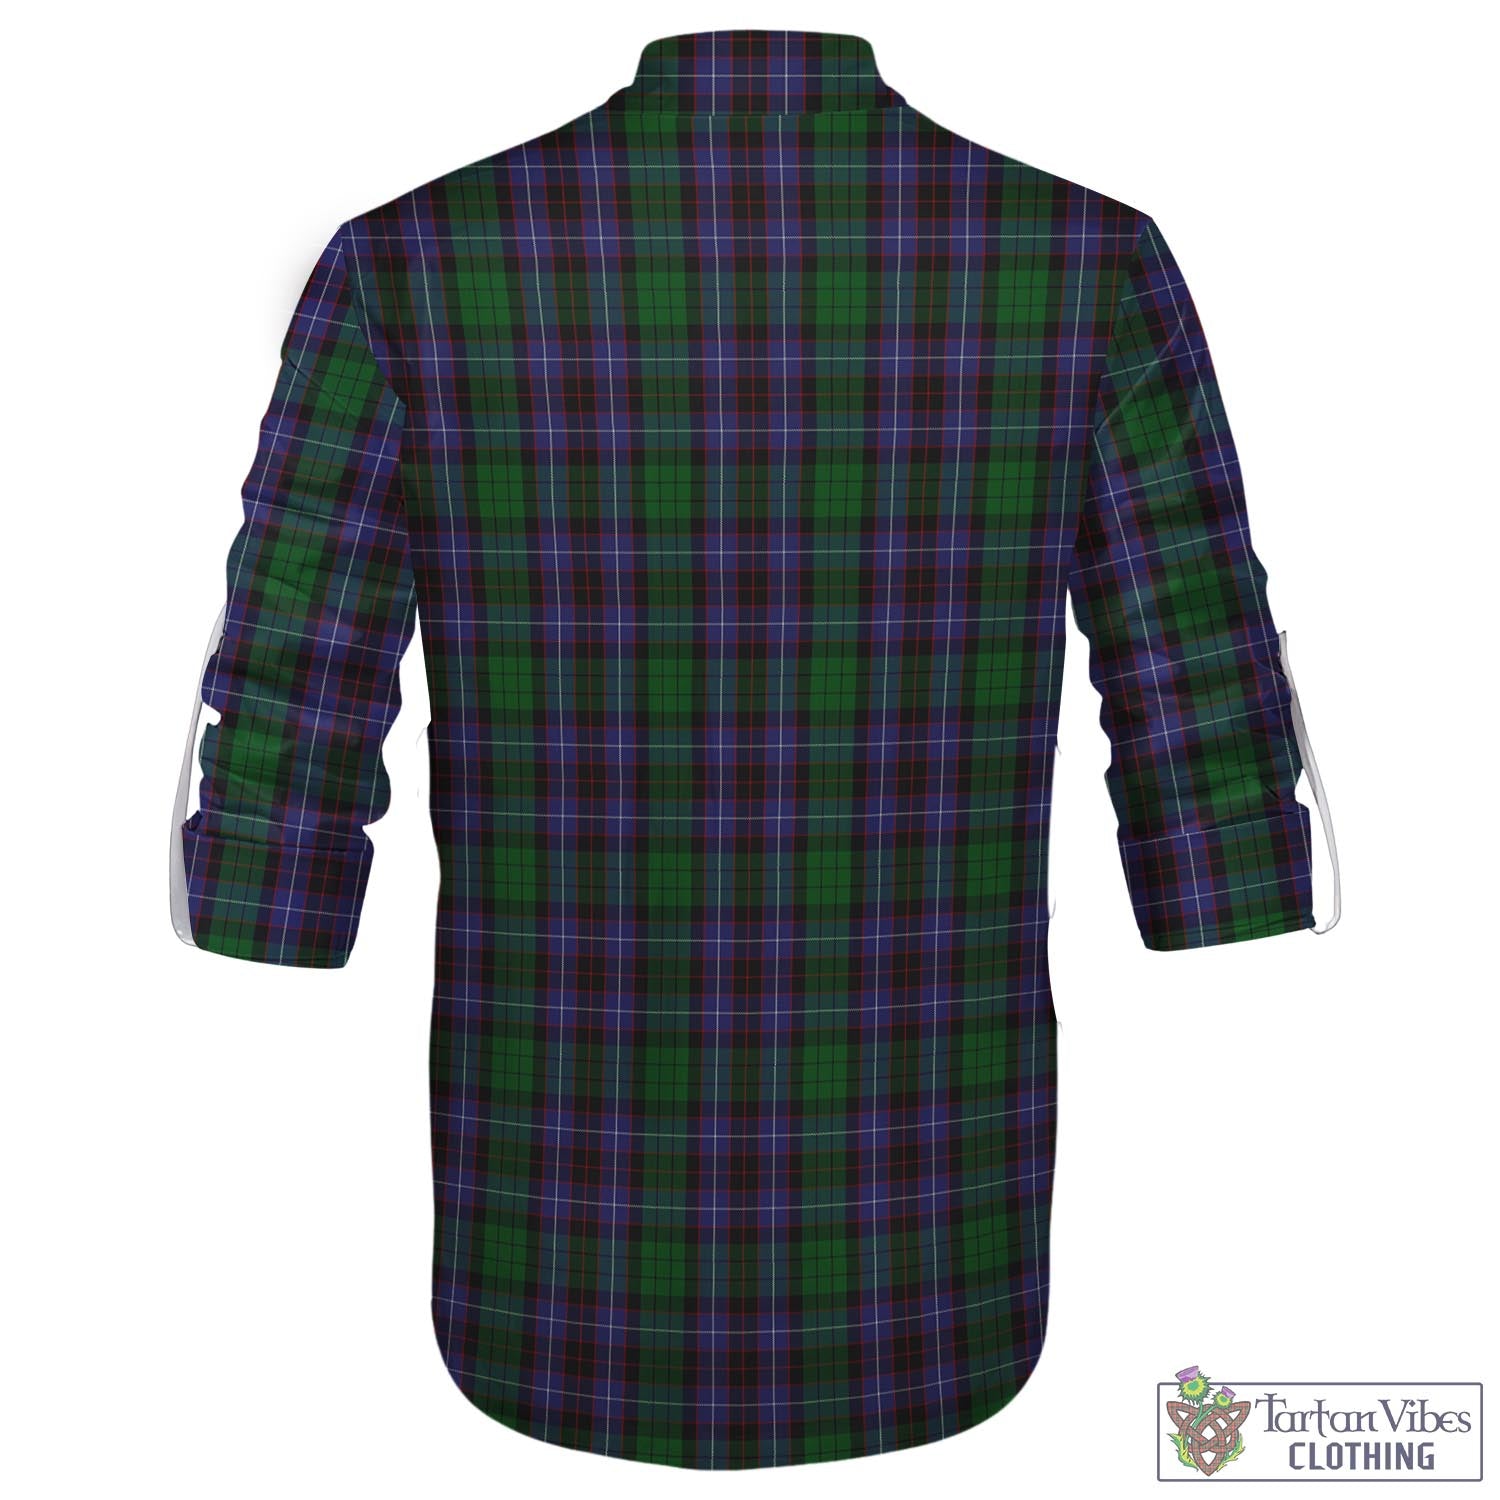 Tartan Vibes Clothing Hunter of Peebleshire Tartan Men's Scottish Traditional Jacobite Ghillie Kilt Shirt